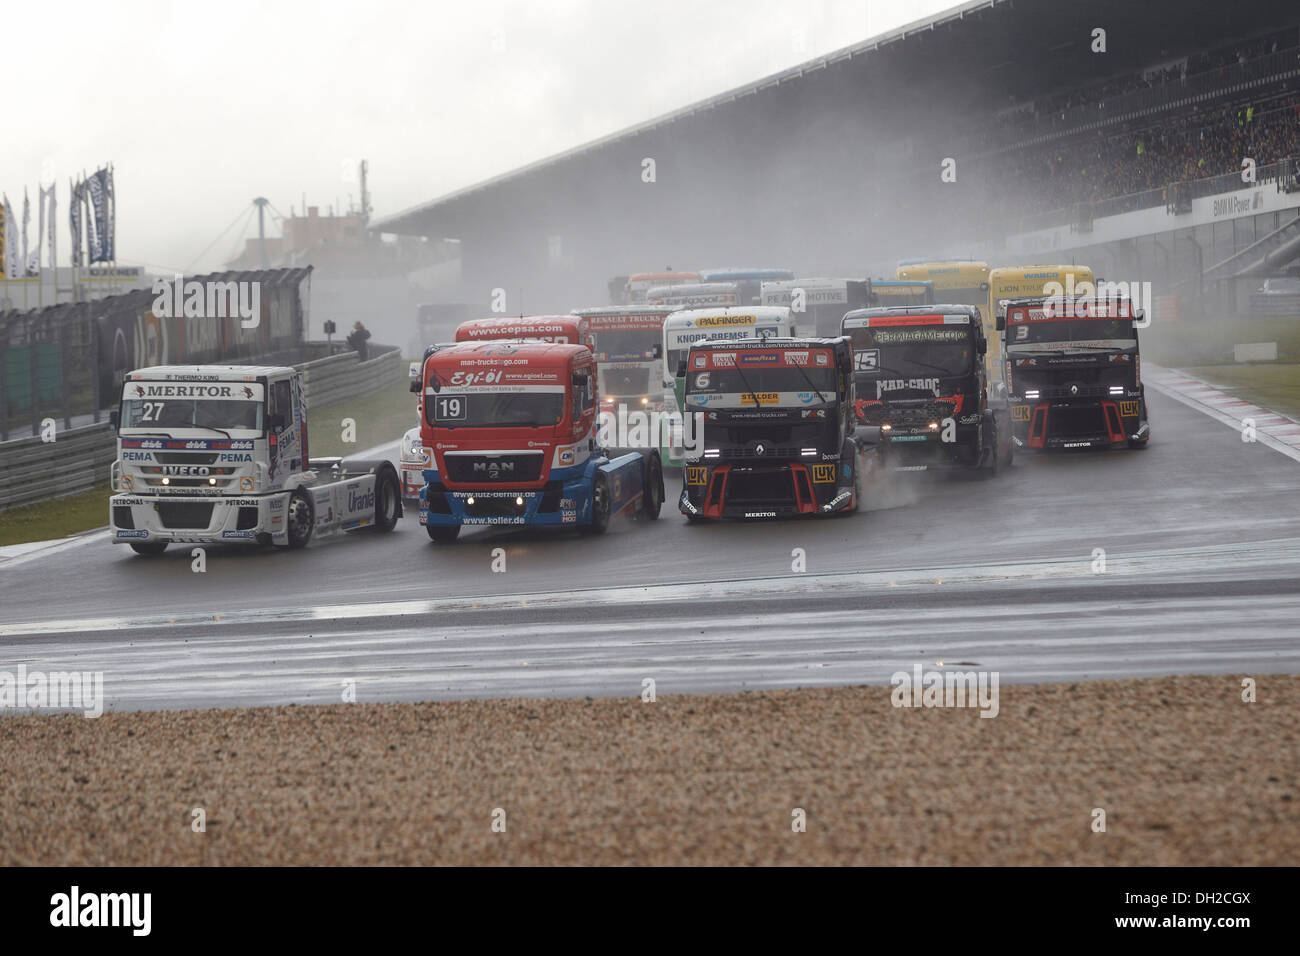 Course de camions sur le circuit du Grand Prix du Nürburgring durant la Truck Grand Prix 2012, Nürburgring, Rhénanie-Palatinat Banque D'Images